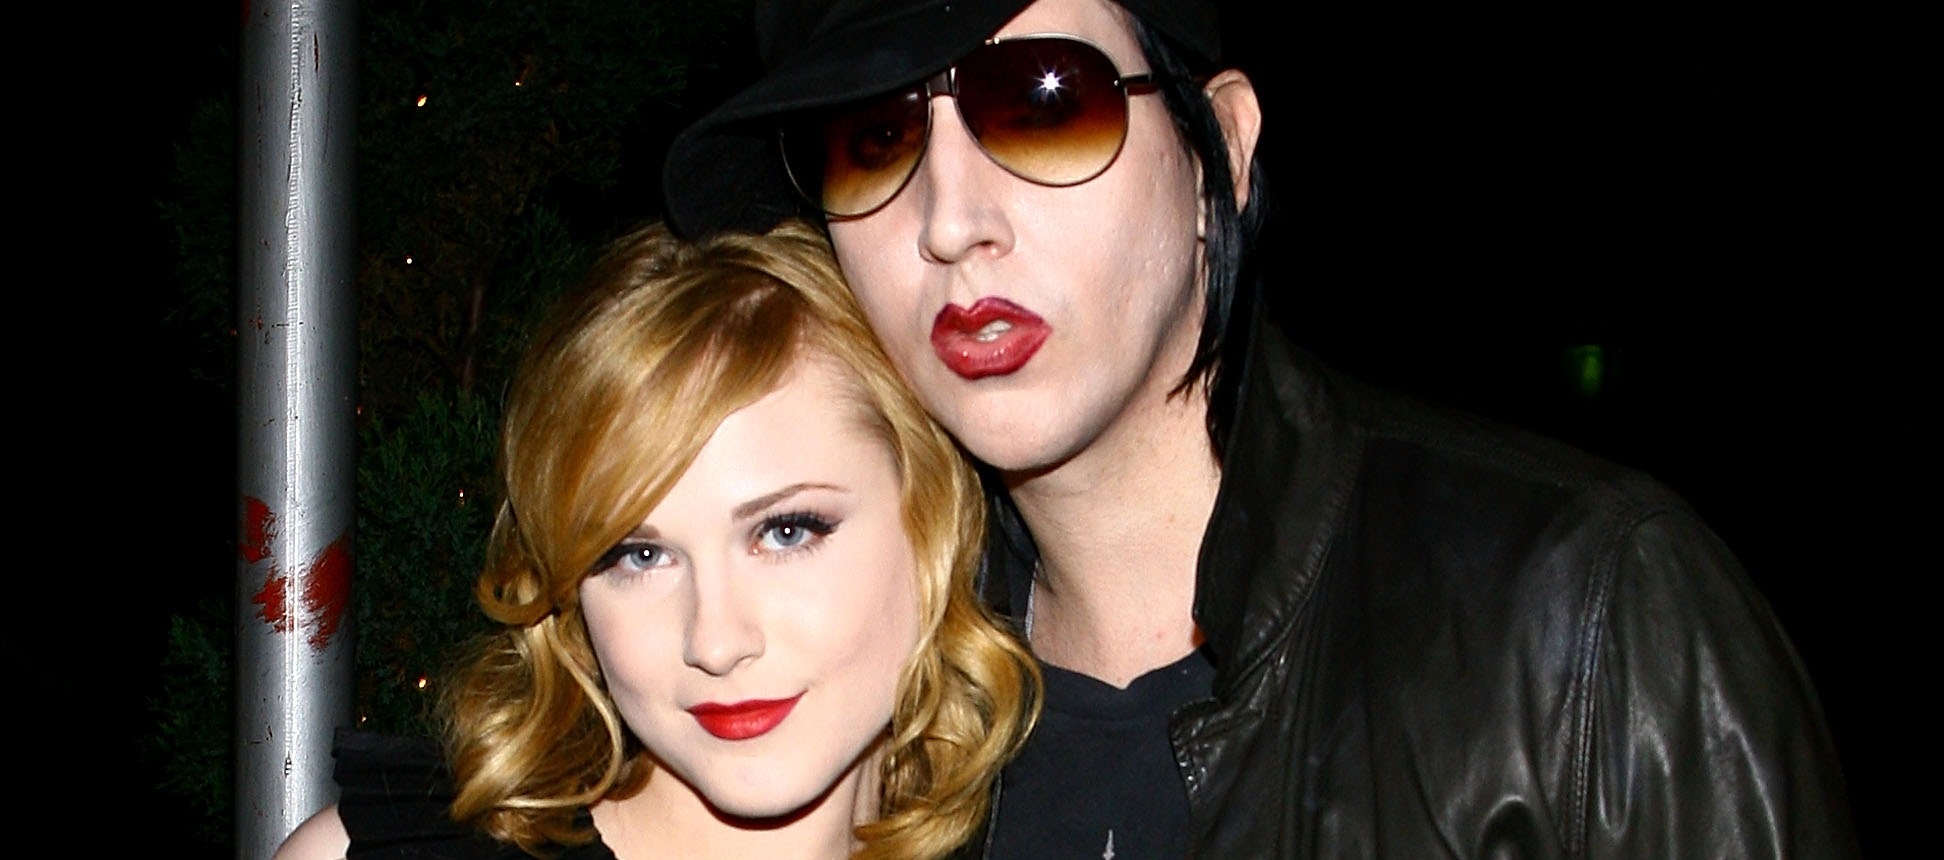 Marilyn Manson tras denuncias de Evan Rachel Wood y otras mujeres: "Son horribles distorsiones"